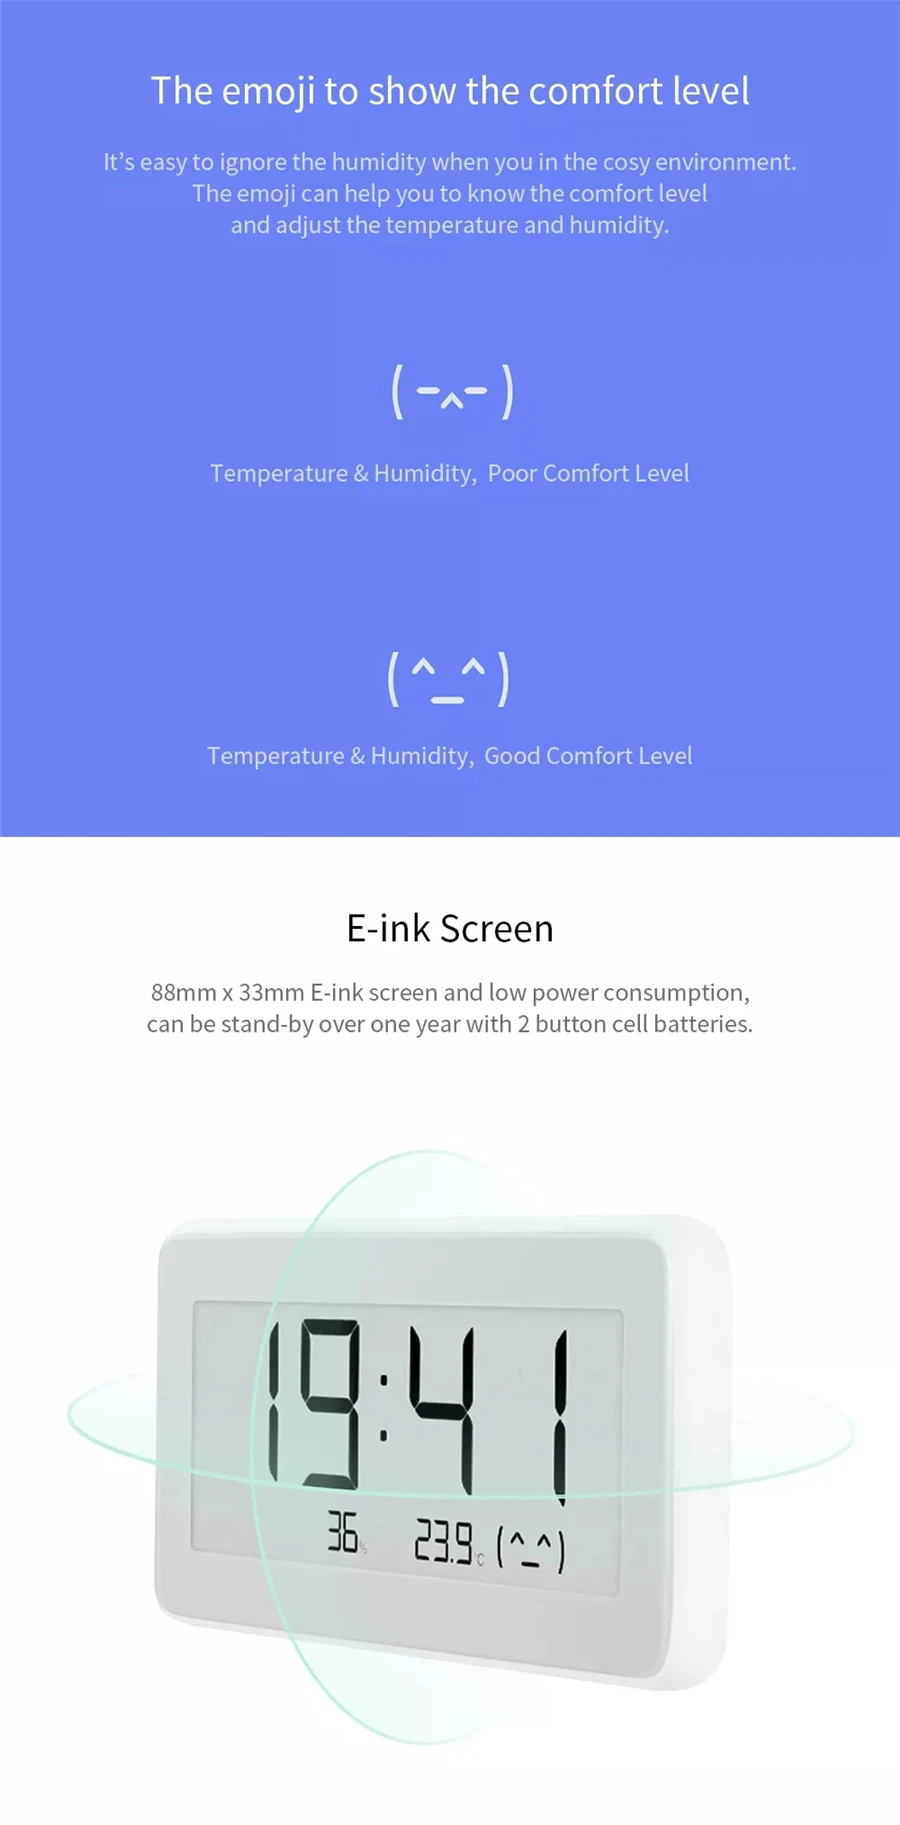 Xiaomi mi jia смарт-температура Hu mi dity мониторинг электронные цифровые часы E-link термометр измеритель влажности mi Home